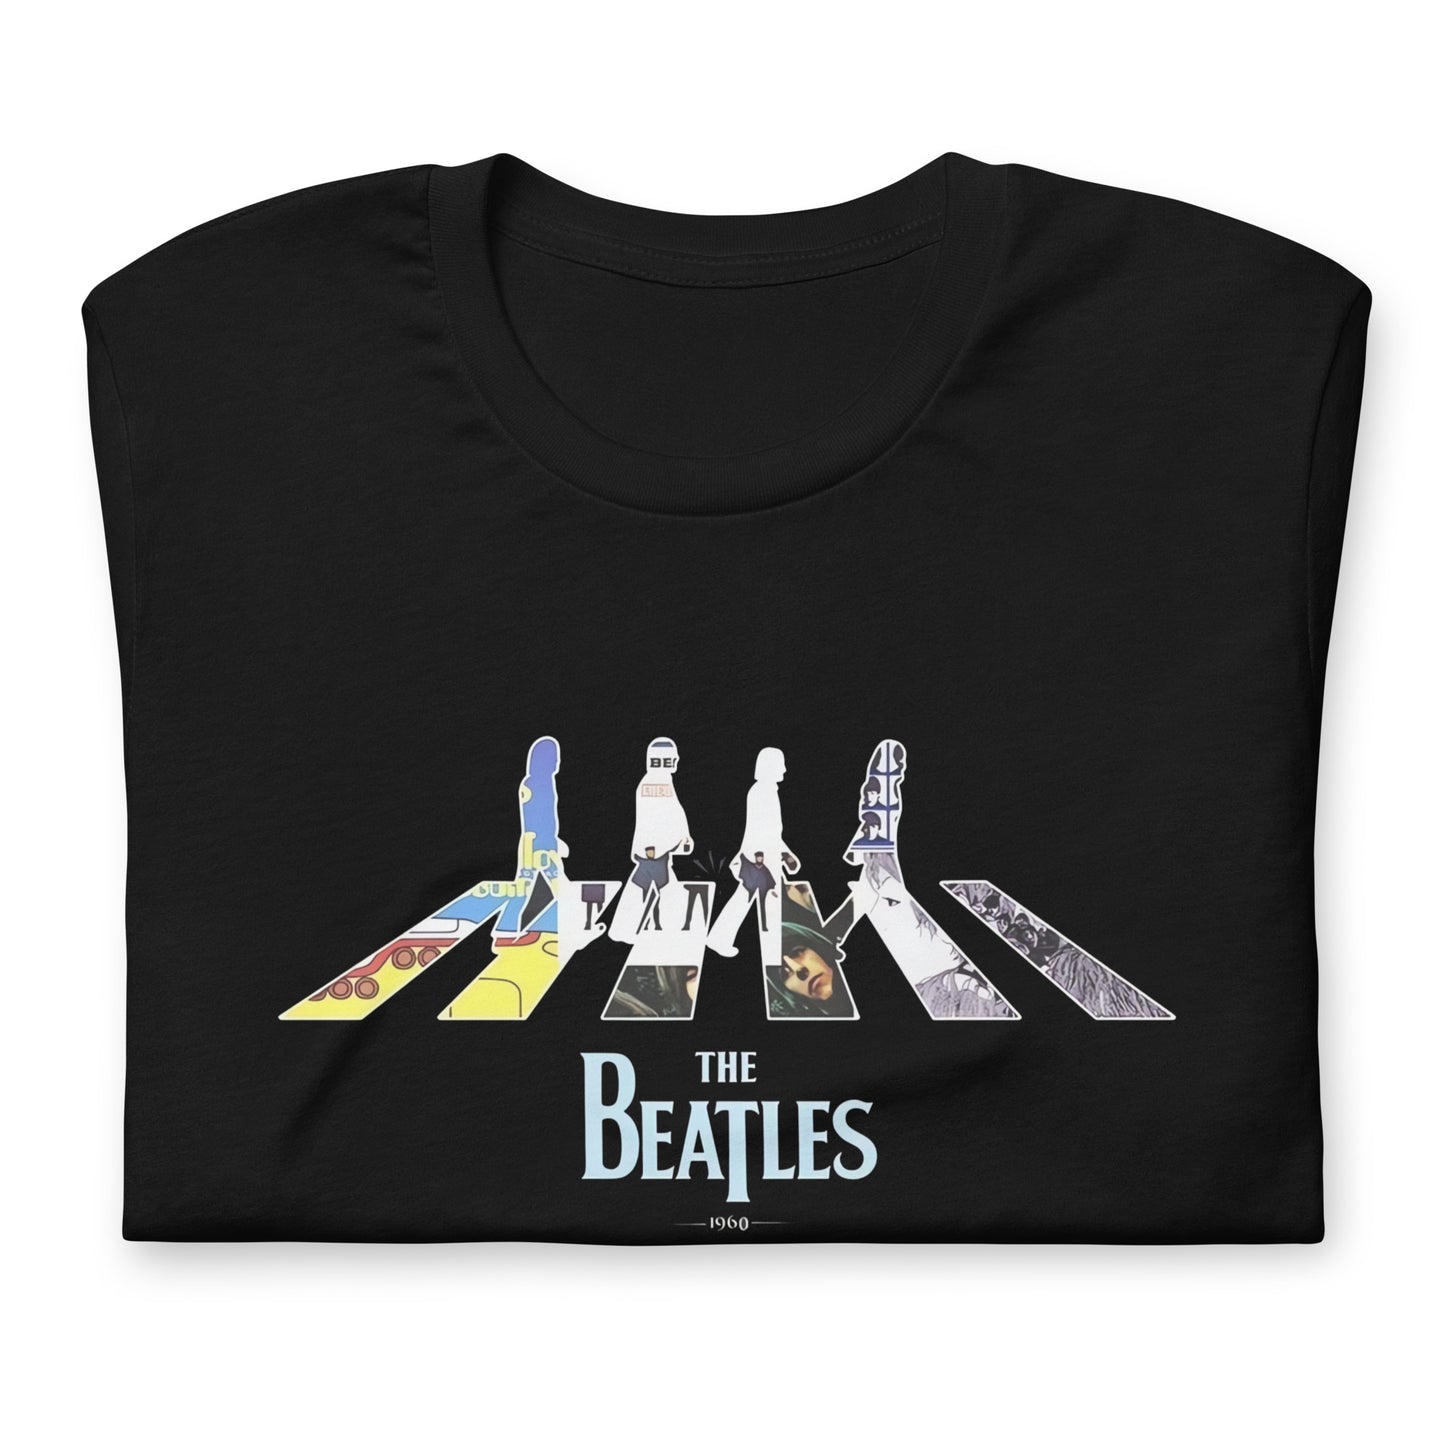 Camiseta The Beatles 1960, nuestras opciones de playeras son Unisex. disponible en Superstar. Compra y envíos internacionales.